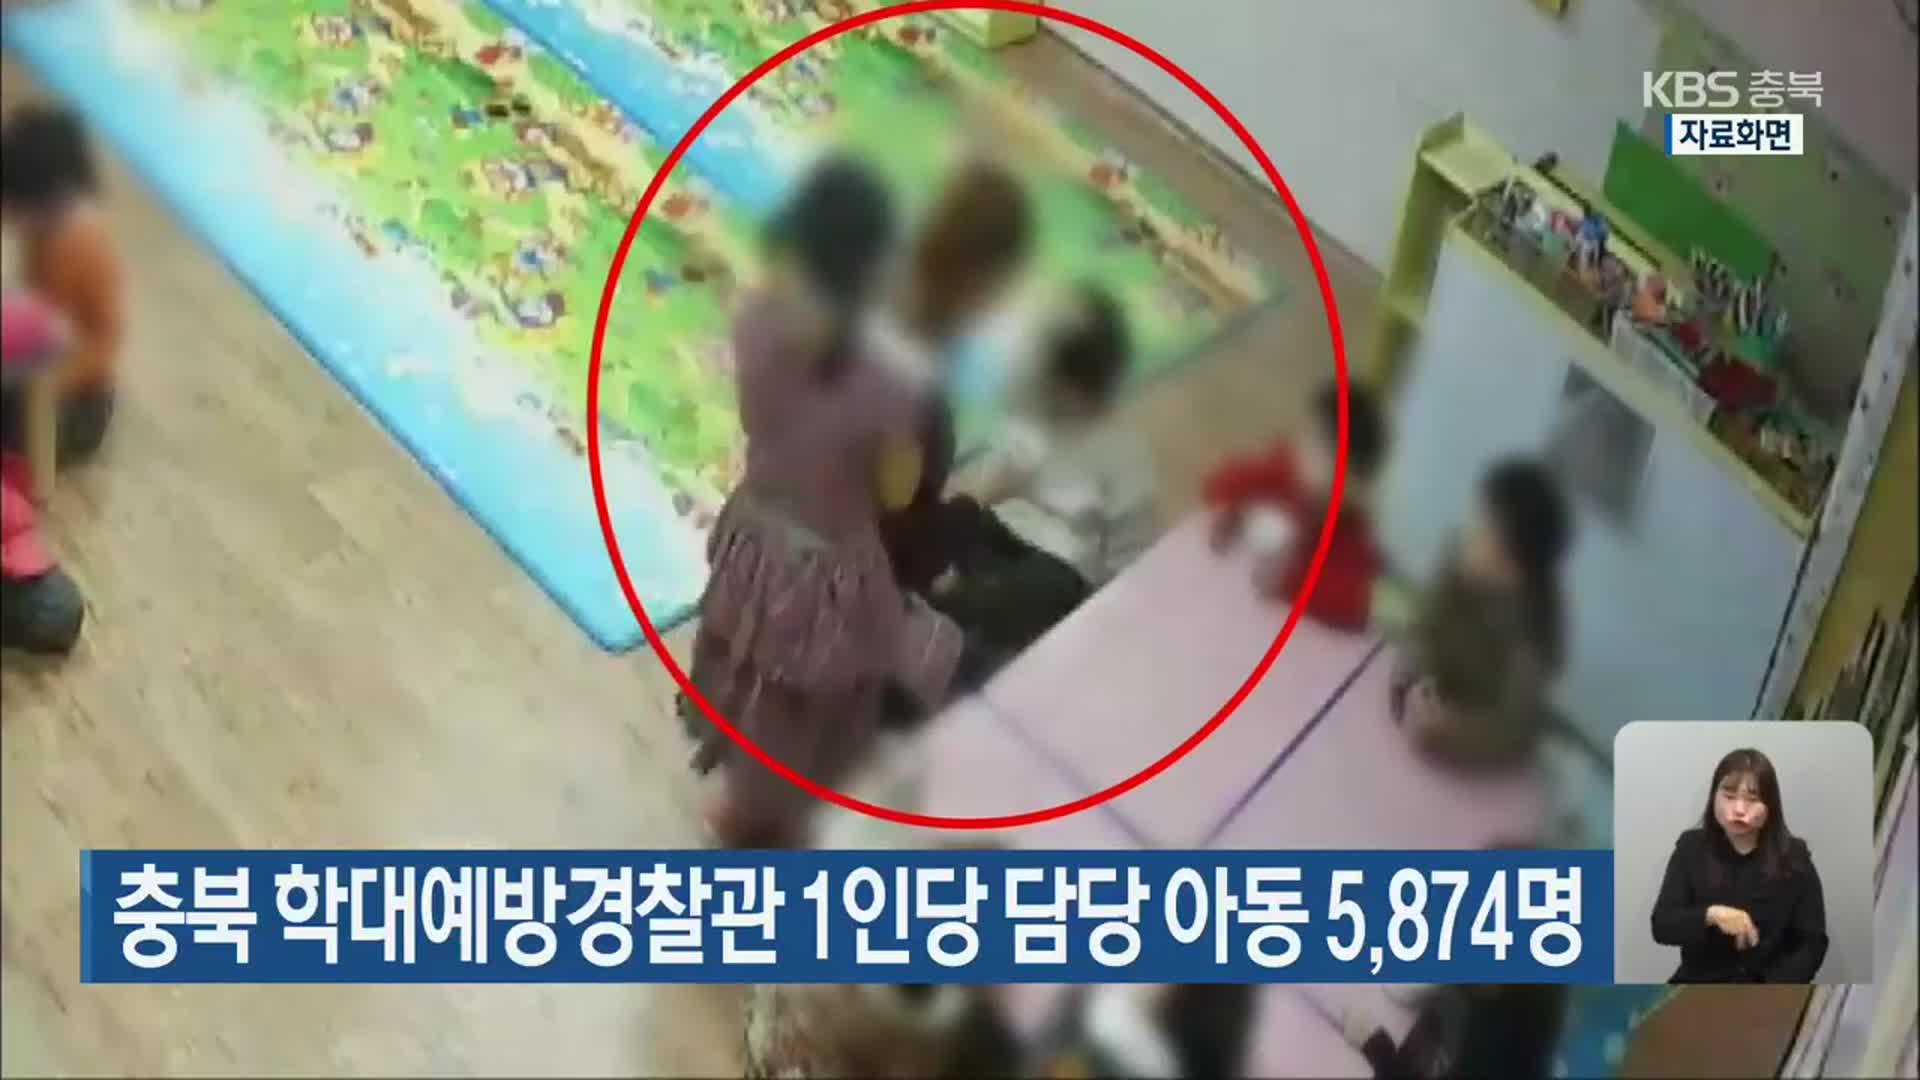 충북 학대예방경찰관 1인당 담당 아동 5,874명